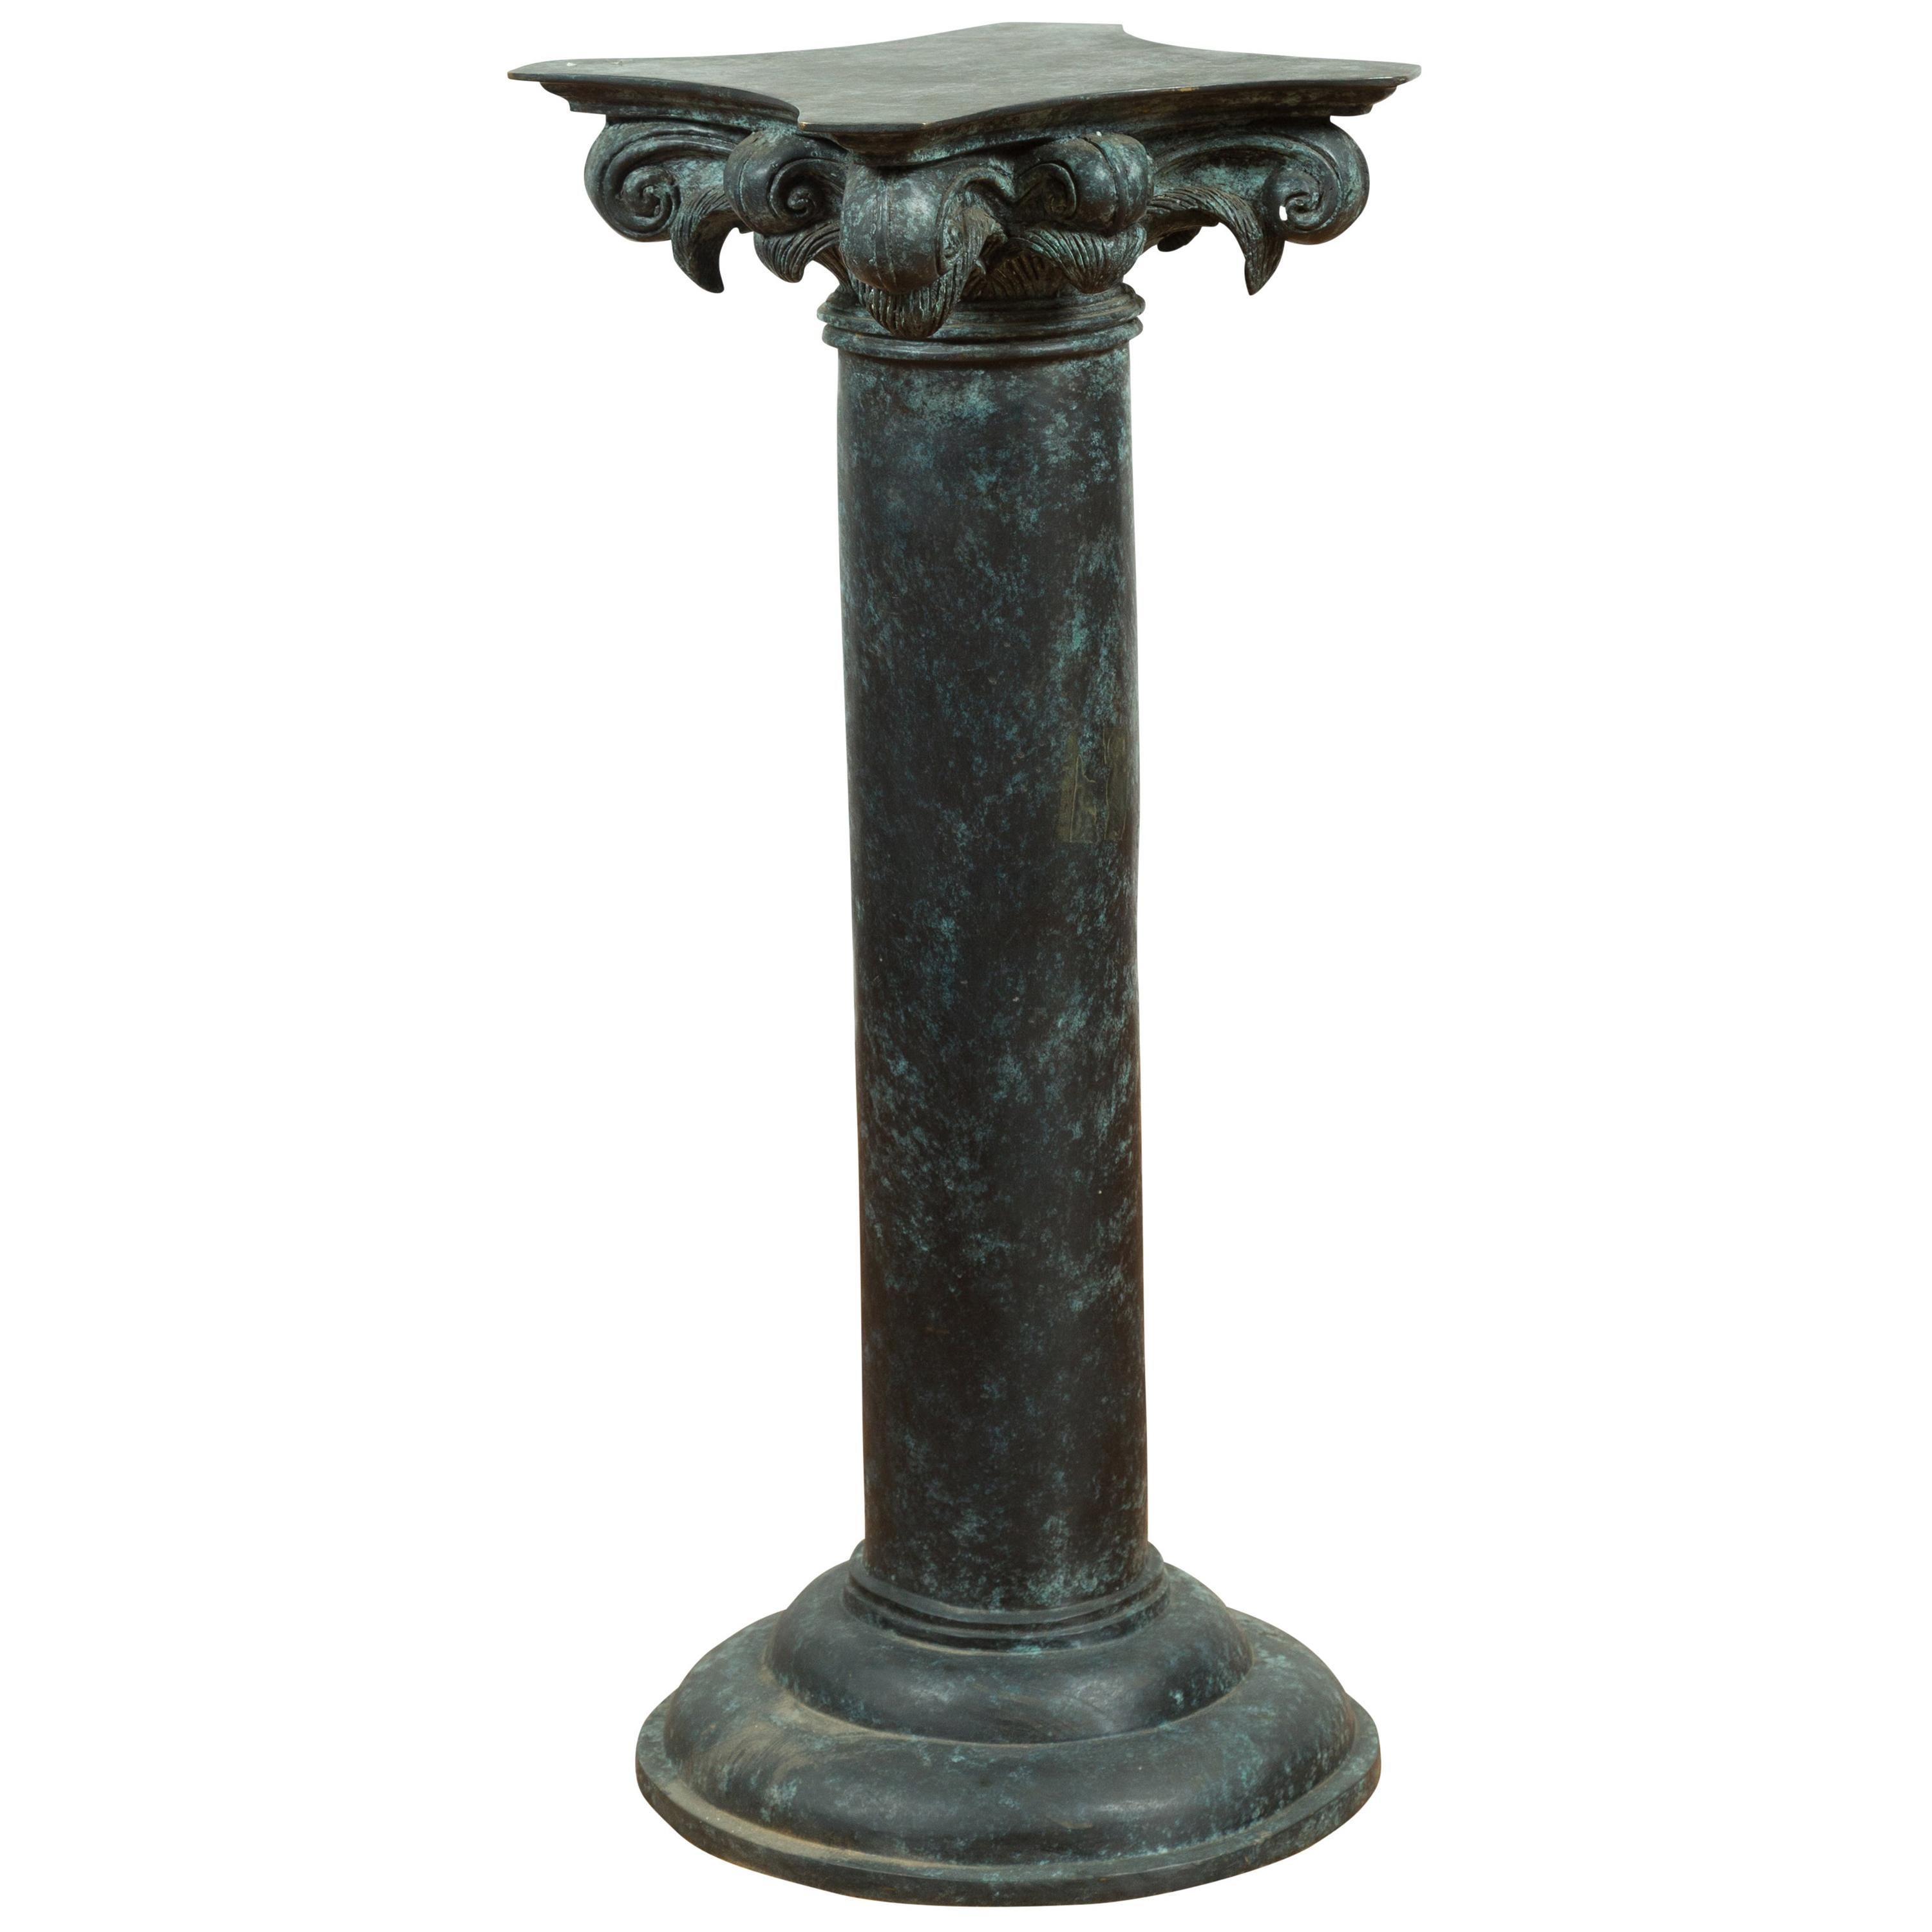 Vintage-Sockel aus Bronze im römischen Stil, griechisch-römisch inspiriert, mit Komponenten-Kabinett